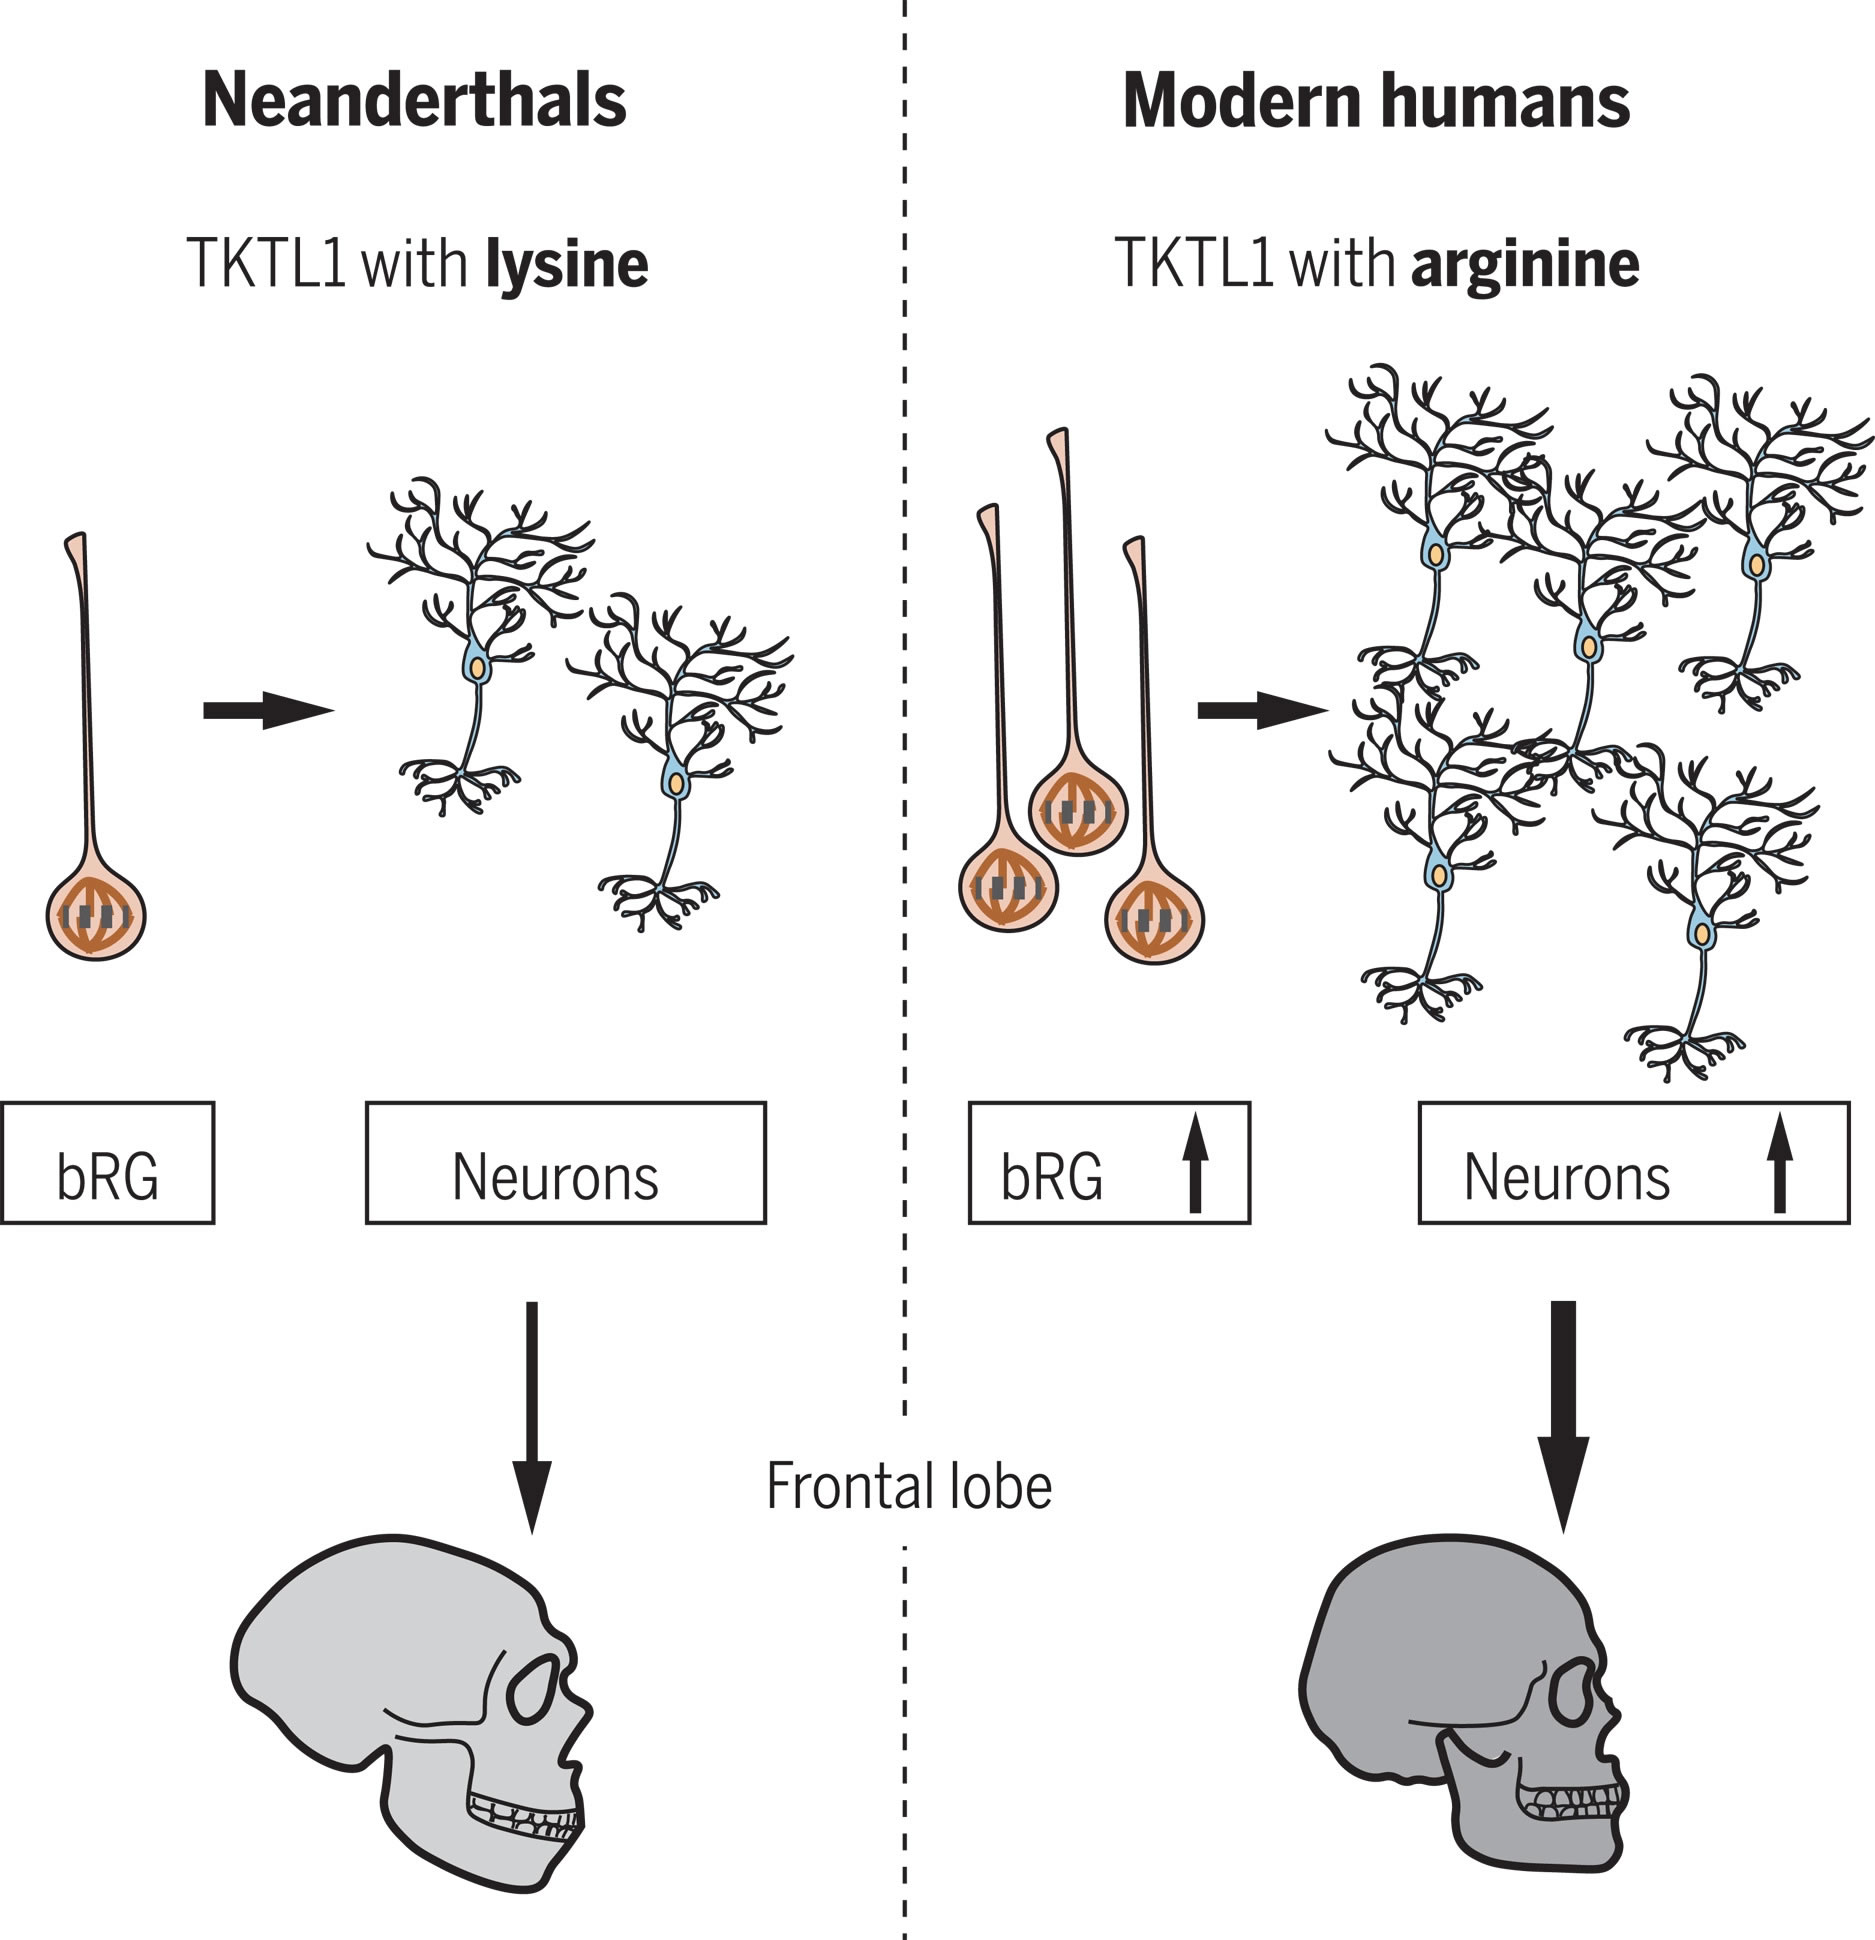 与尼安德特人相比 人类TKTL1意味着现代人额叶新皮层的神经发生更大